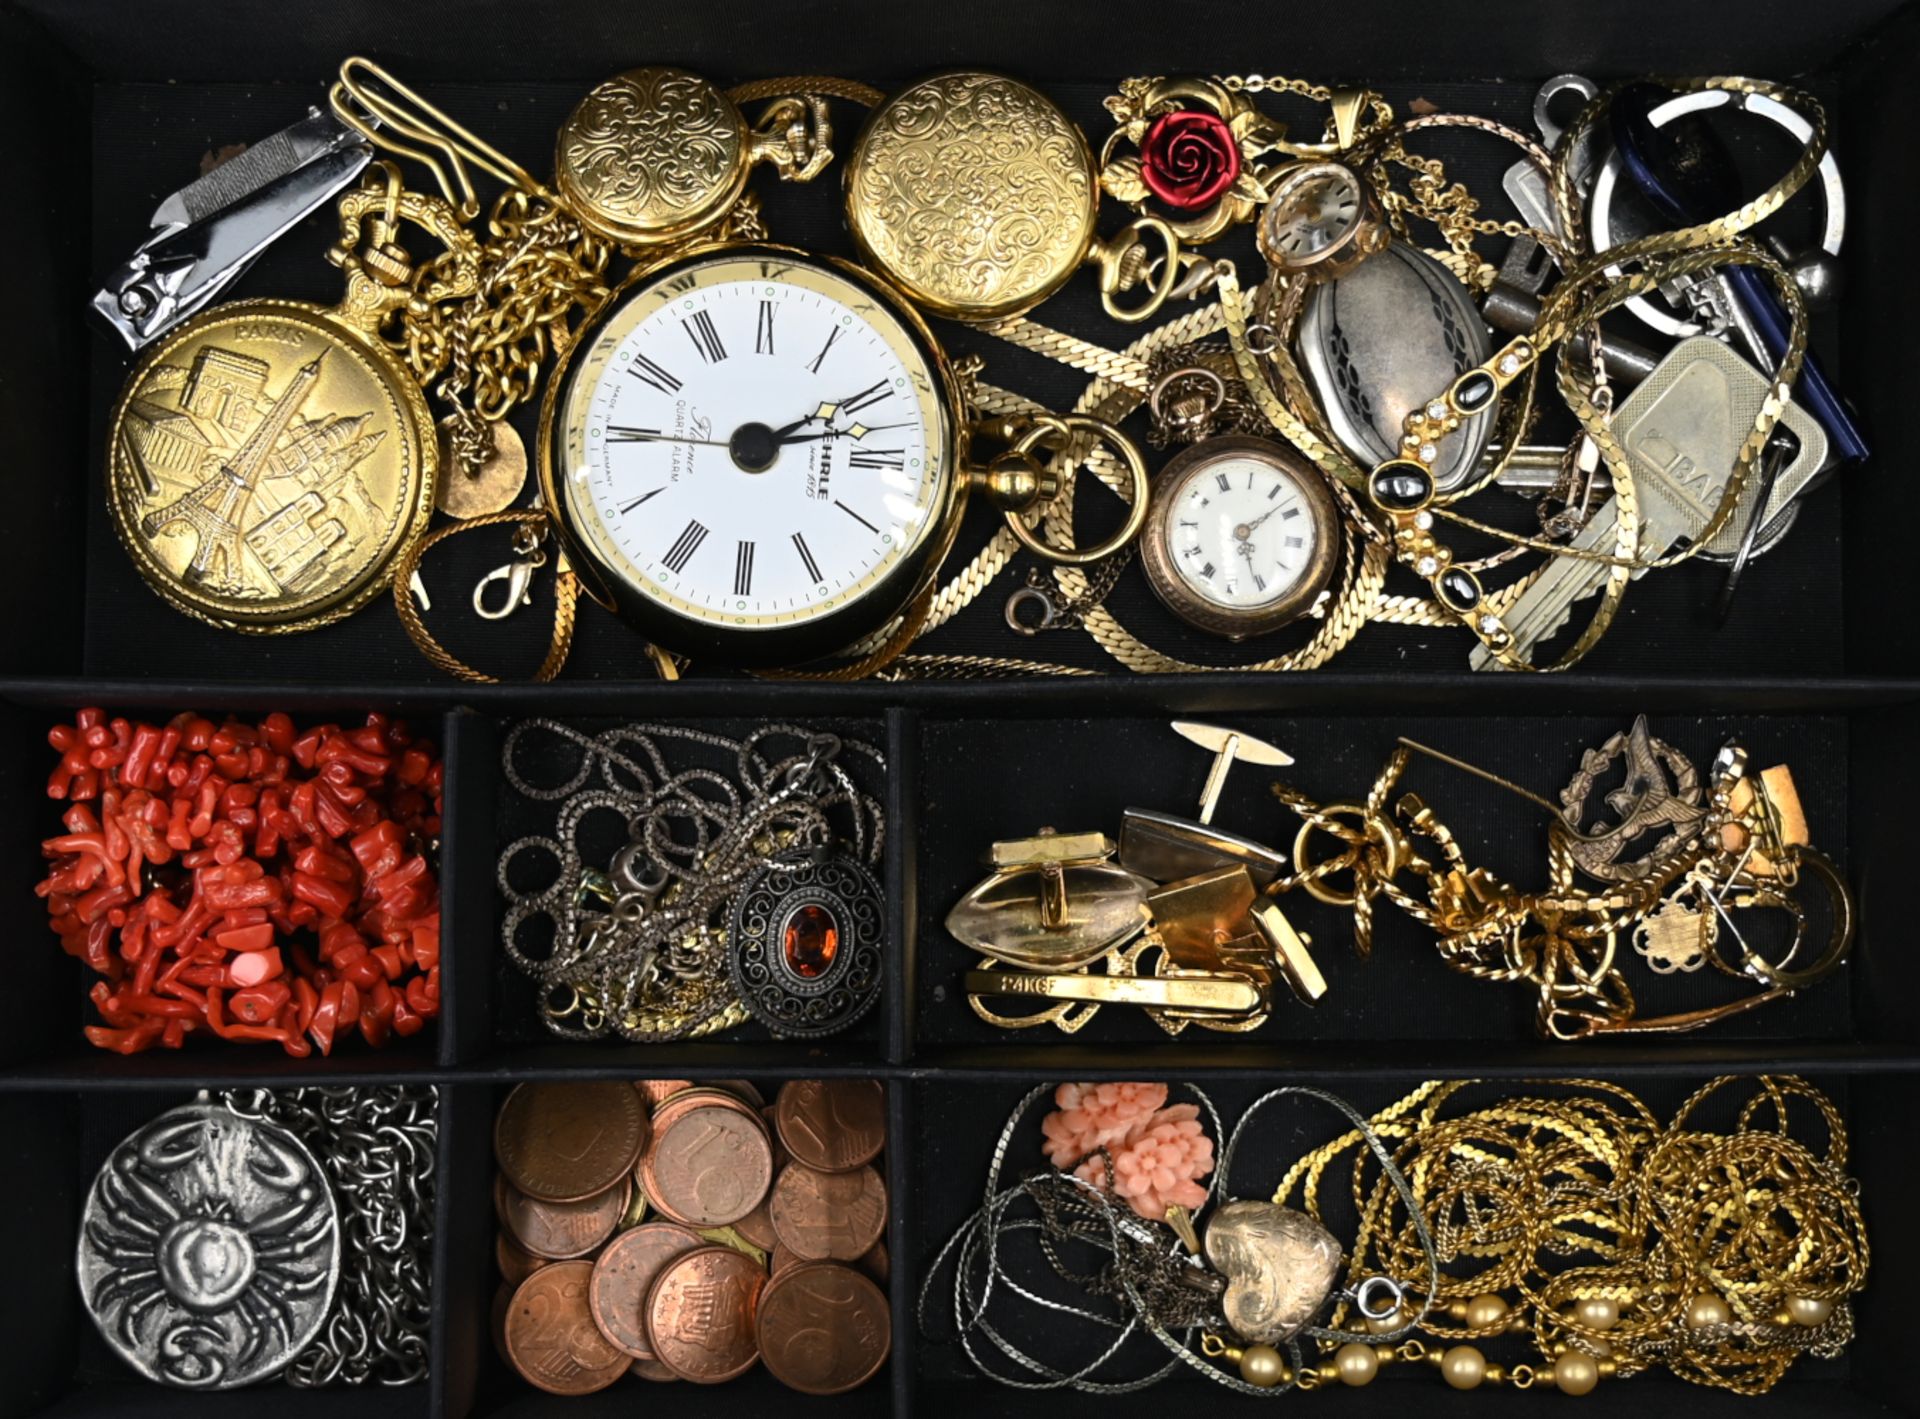 1 Damentaschenuhr wohl min. GG, 1 Konvolut Schmuck: Silber, Metall, Mode, z.T. Taschenuhren nztl., K - Bild 3 aus 3